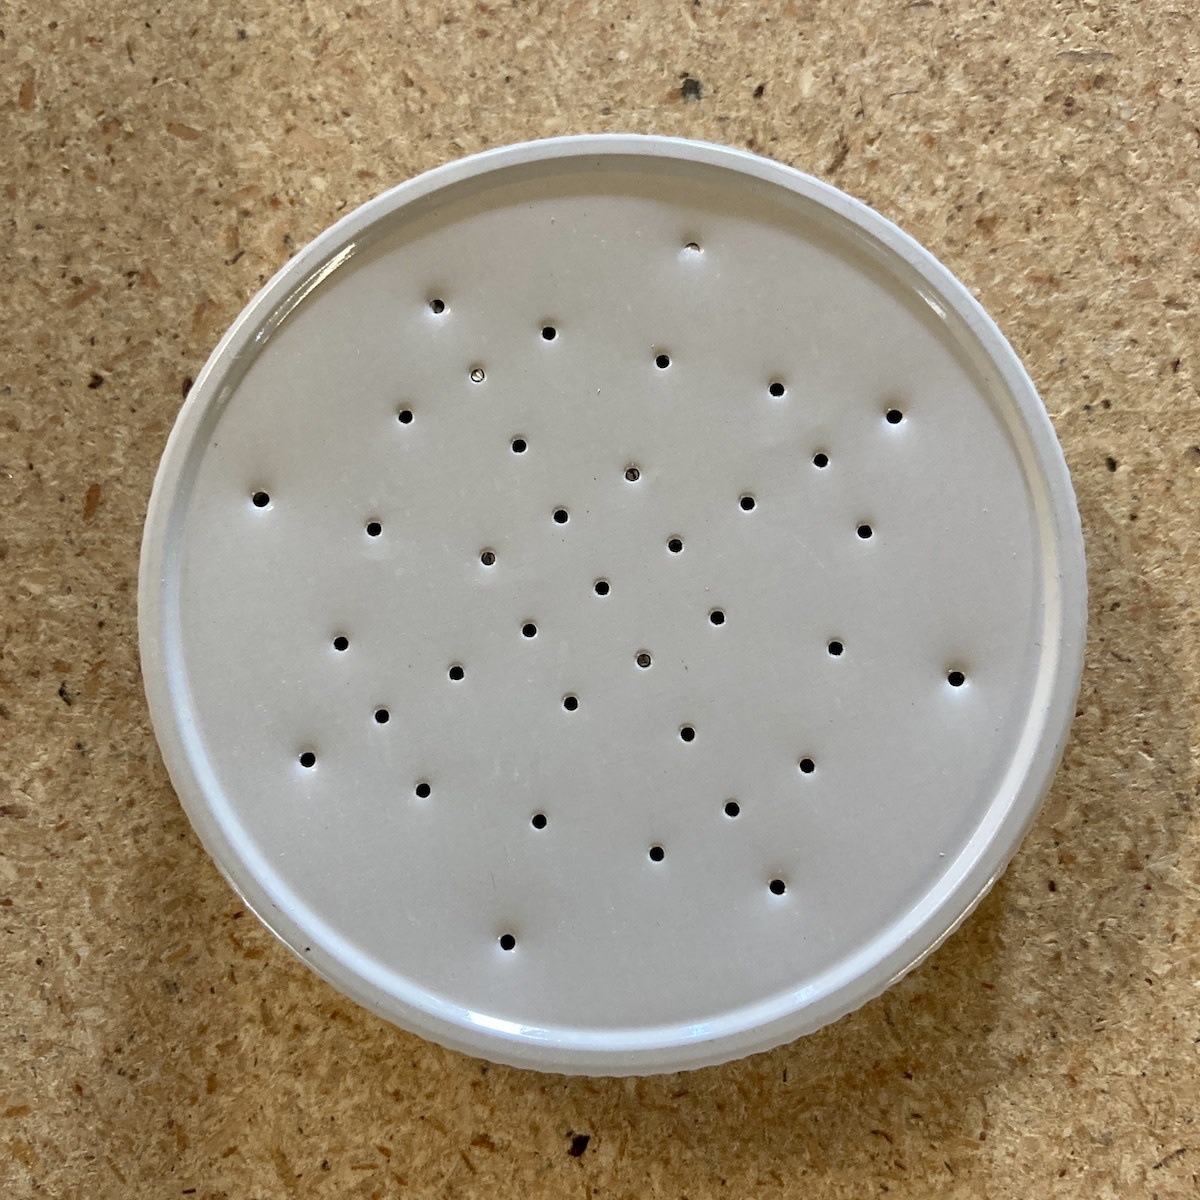 70 G Feeder Jar Perforated Lid